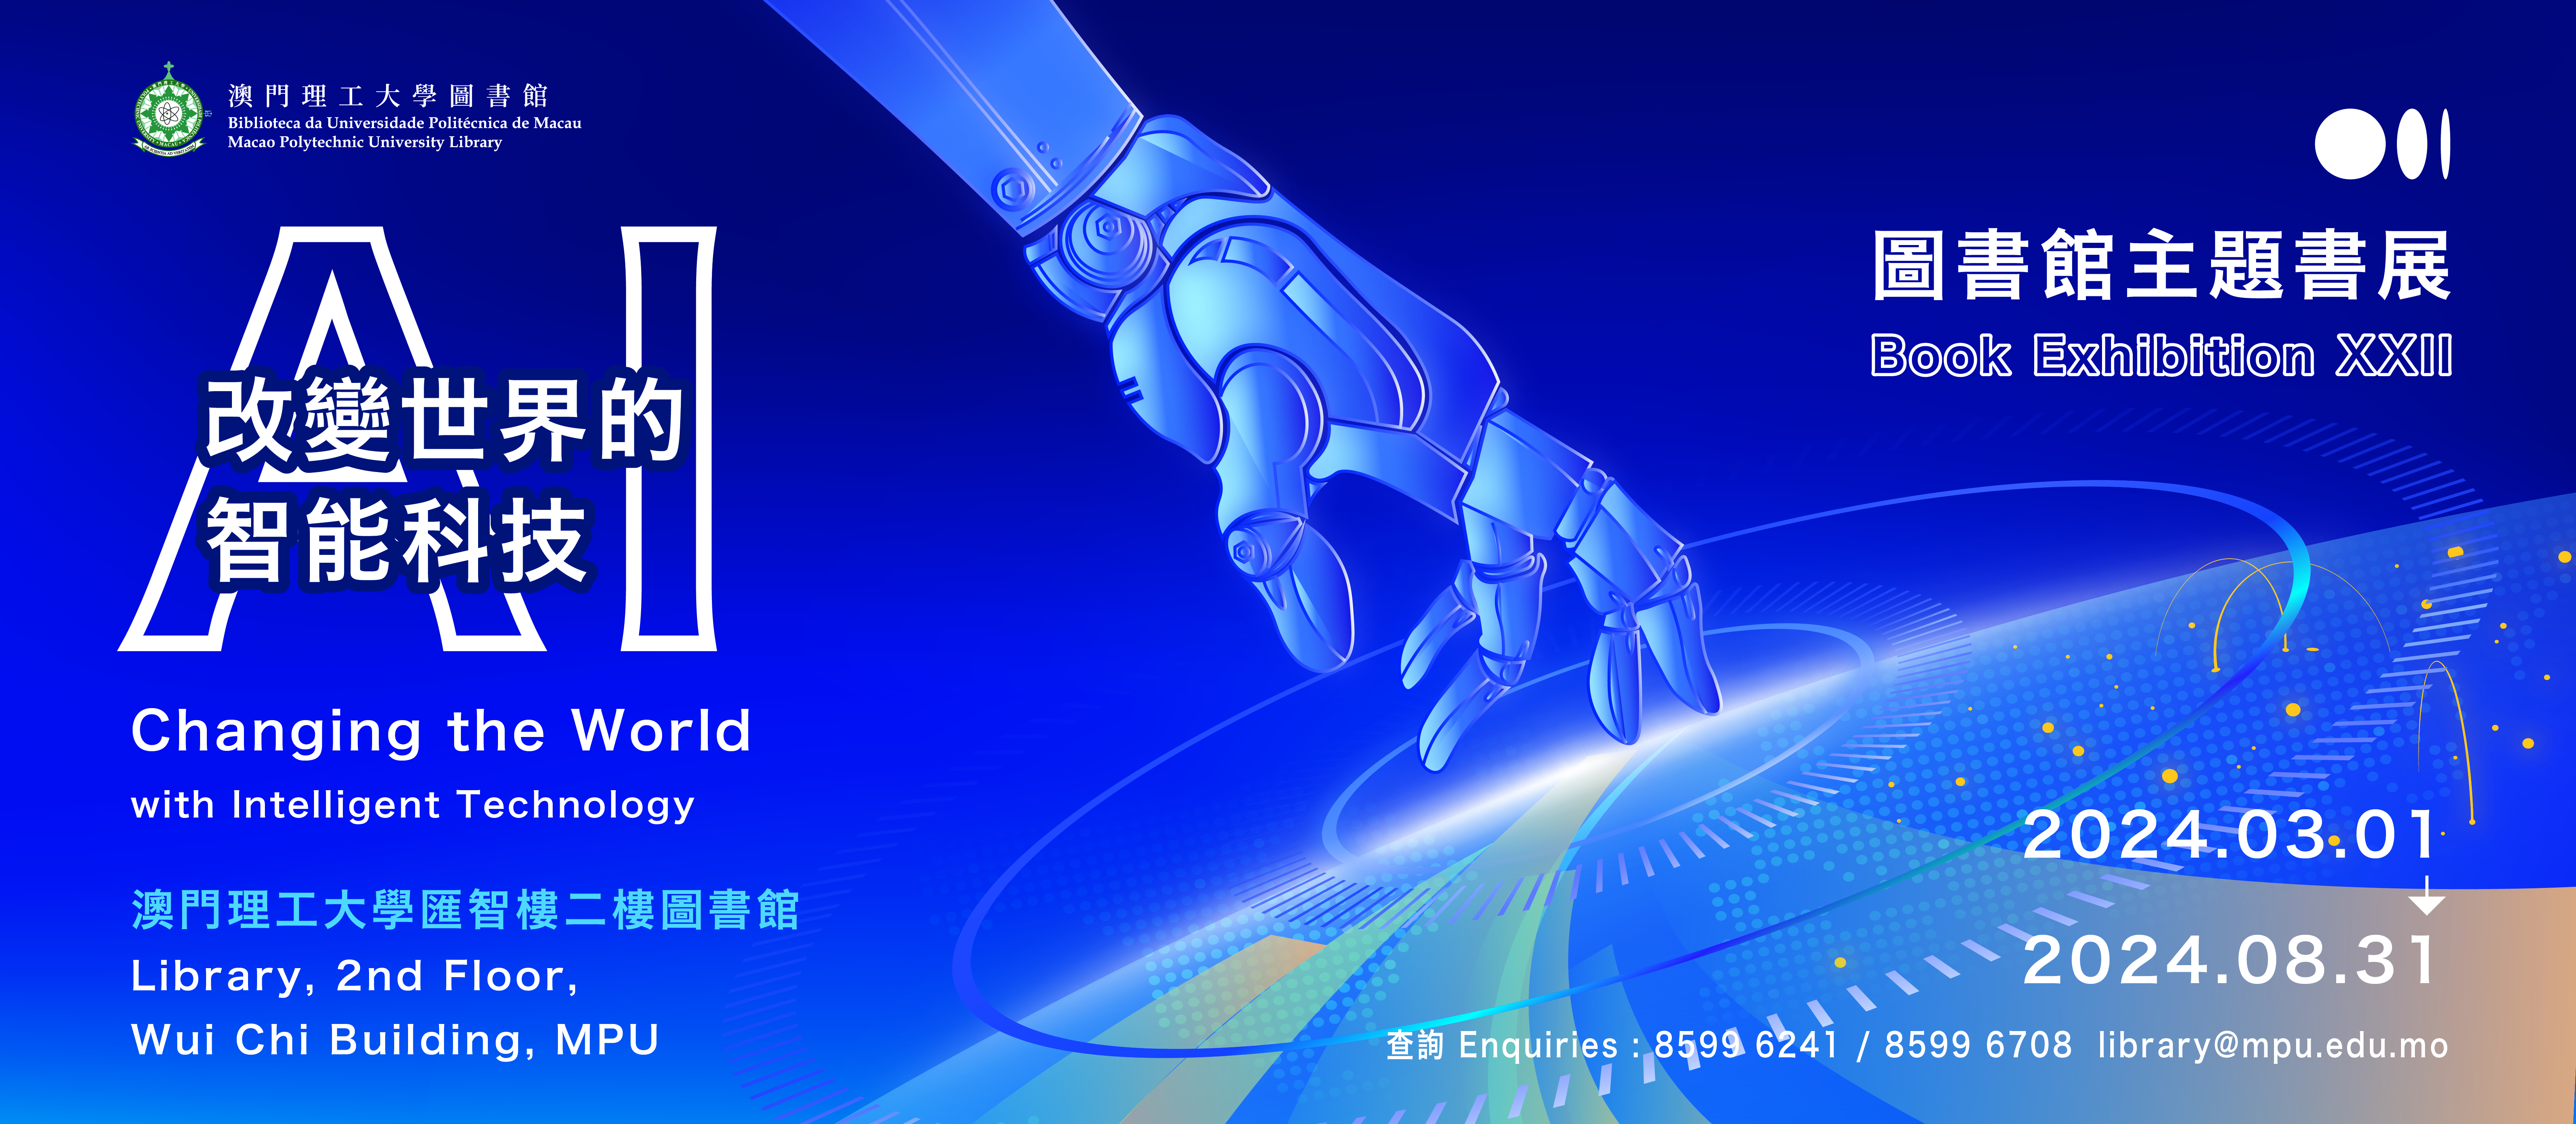 圖書館主題書展 22 : AI - 改變世界的智能科技